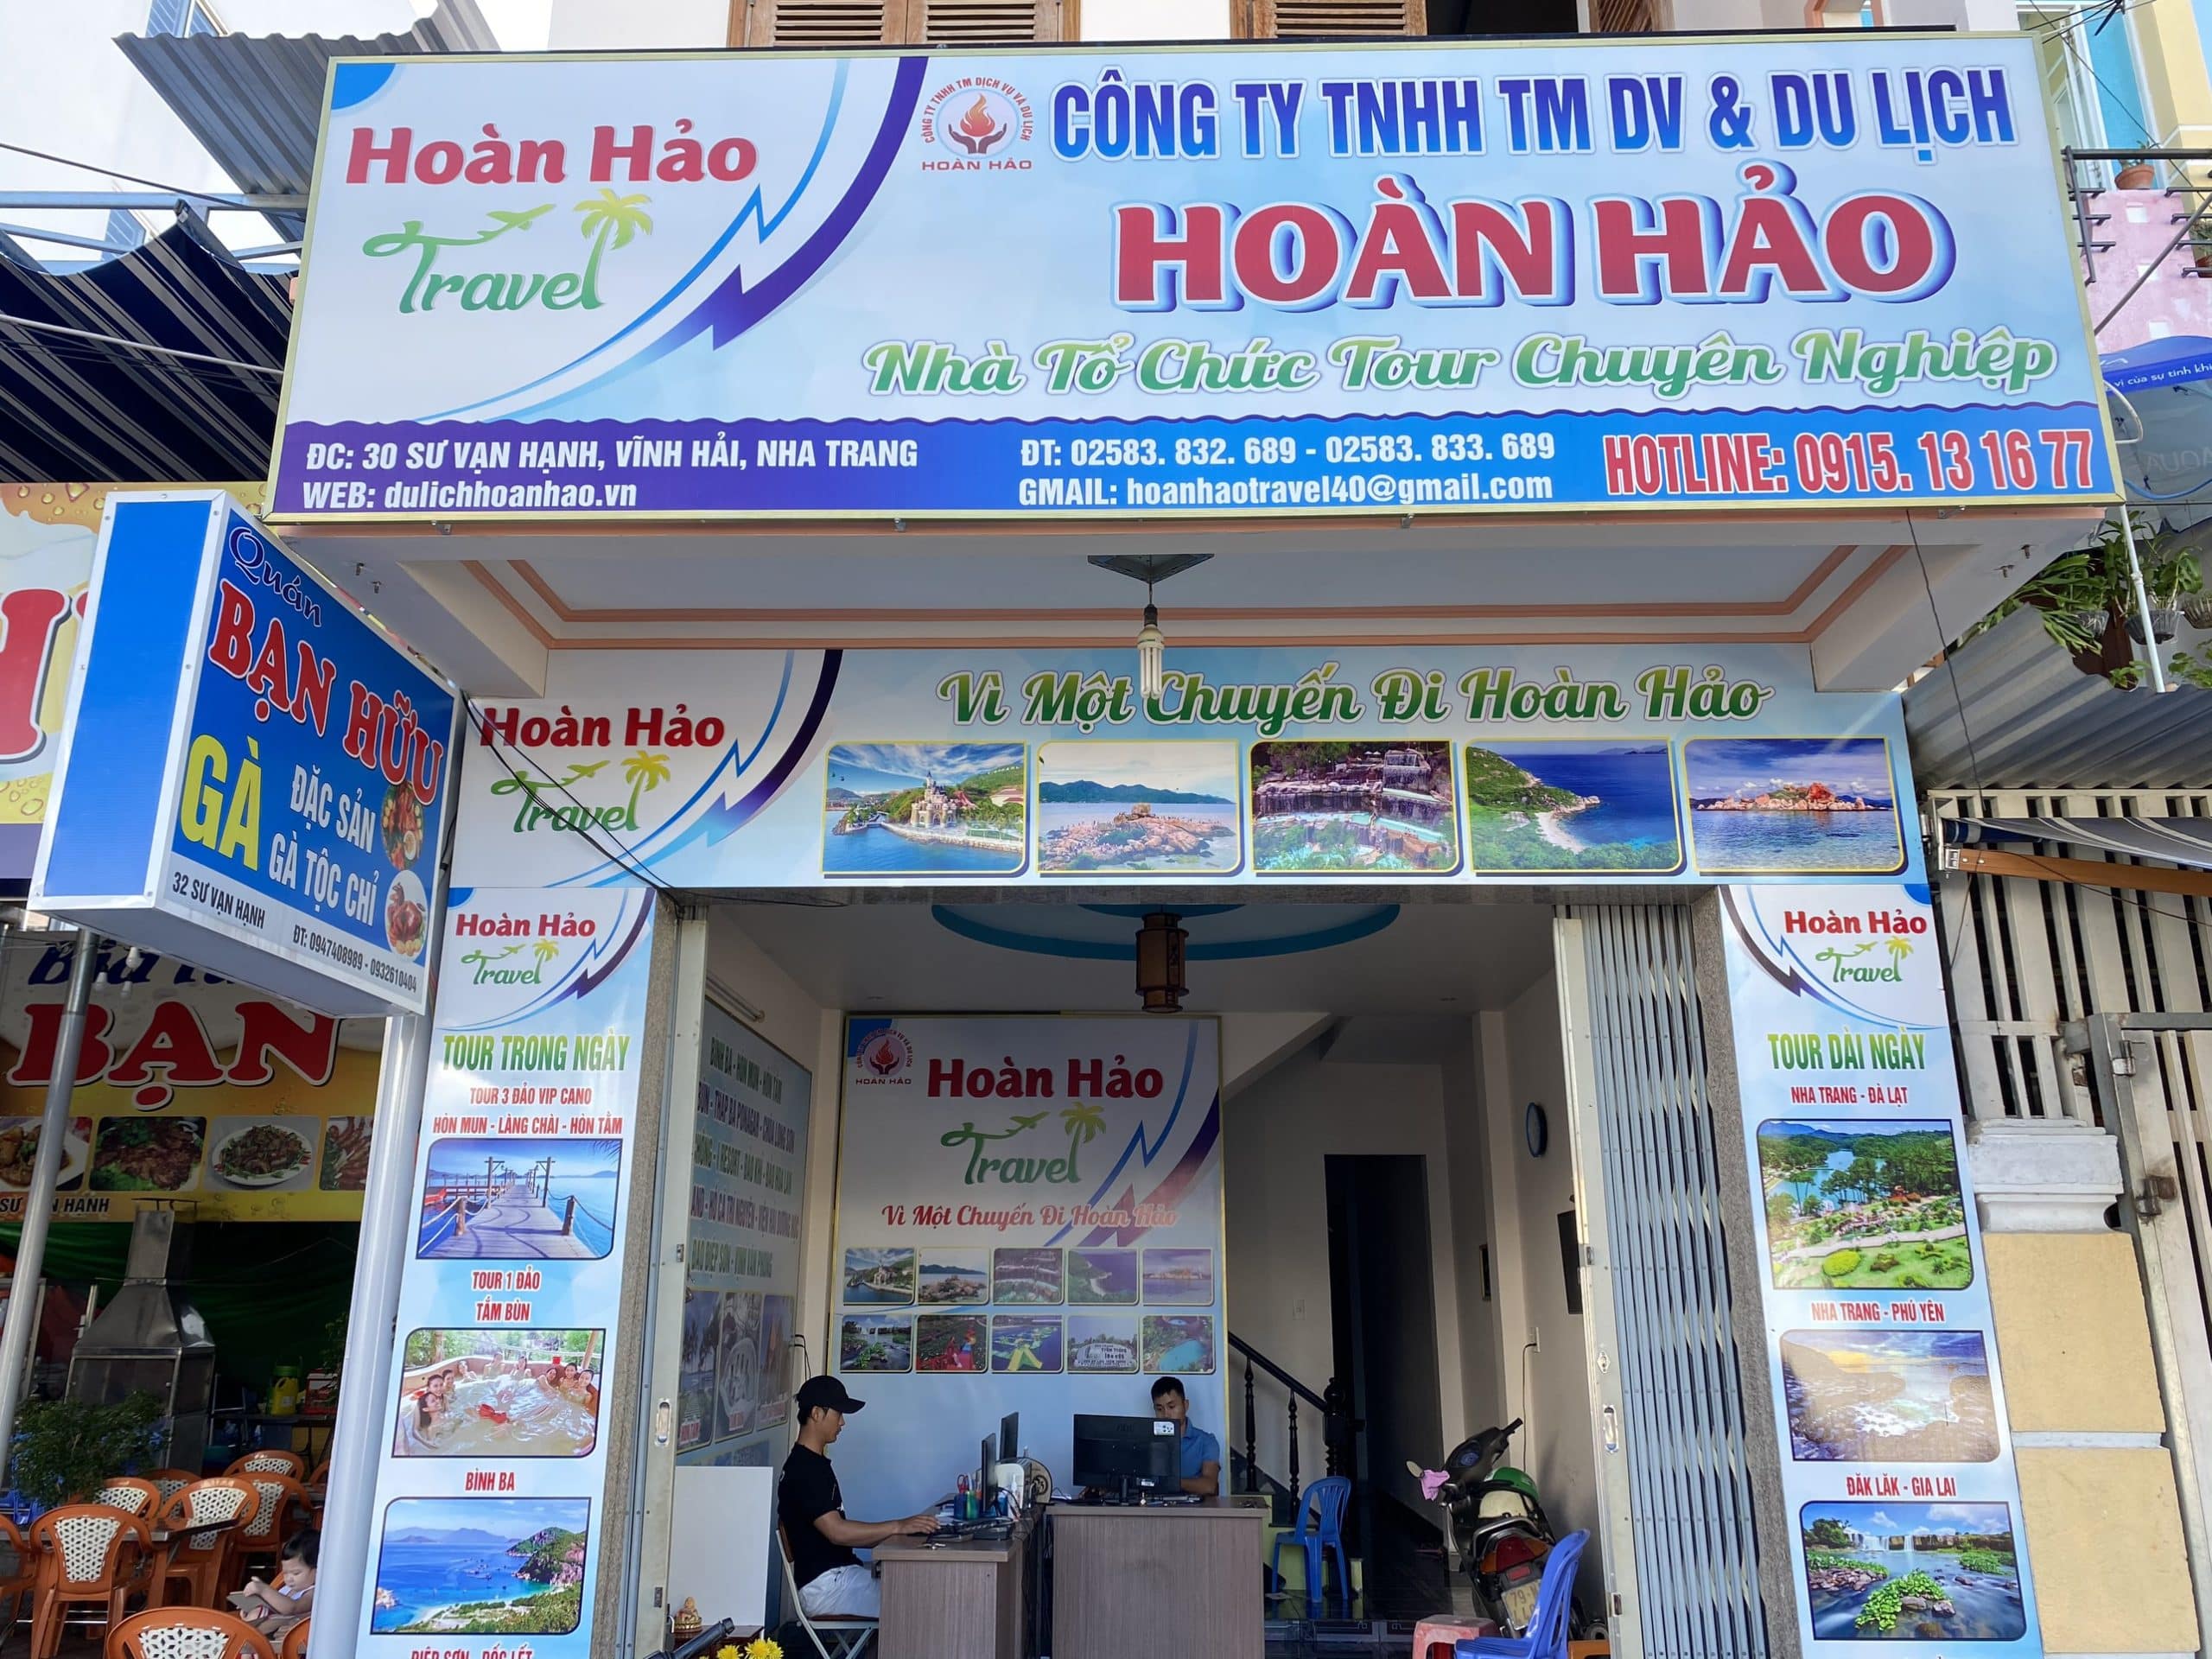 thuê xe du lịch Nha Trang